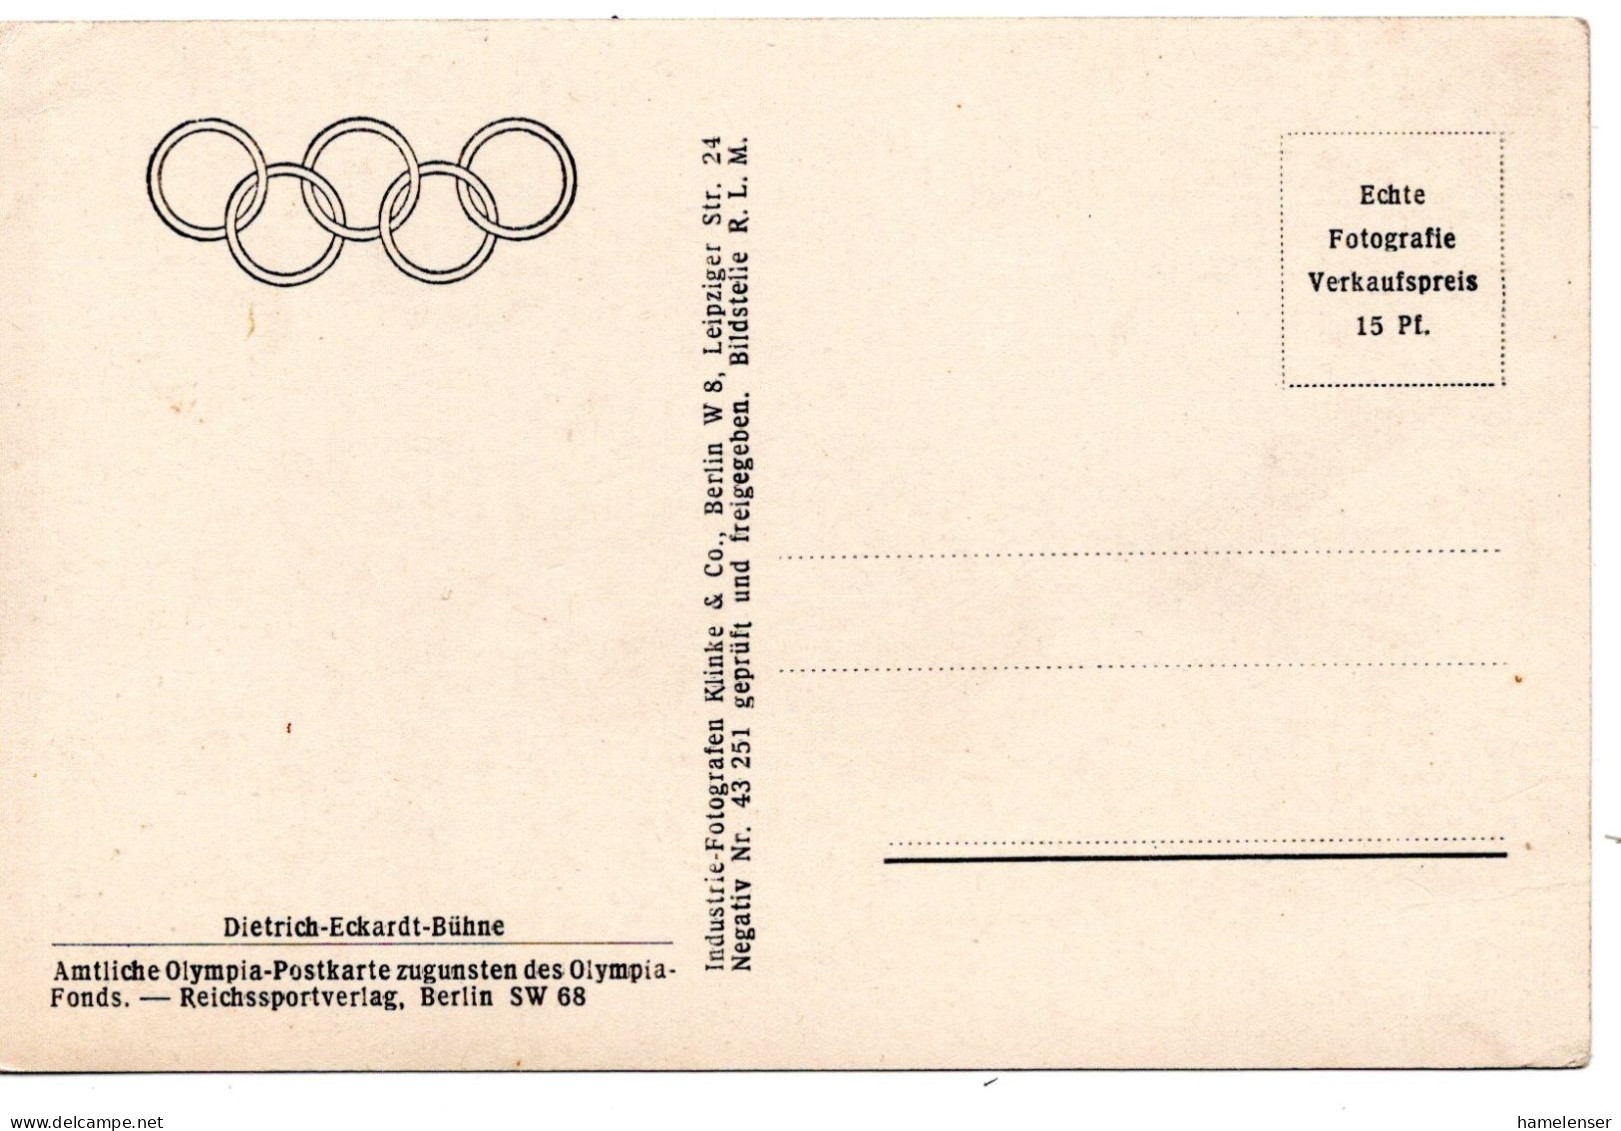 61120 - Deutsches Reich - 1936 - Ans.-Kte. "Dietrich-Eckardt-Buehne", Ungebraucht - Olympic Games